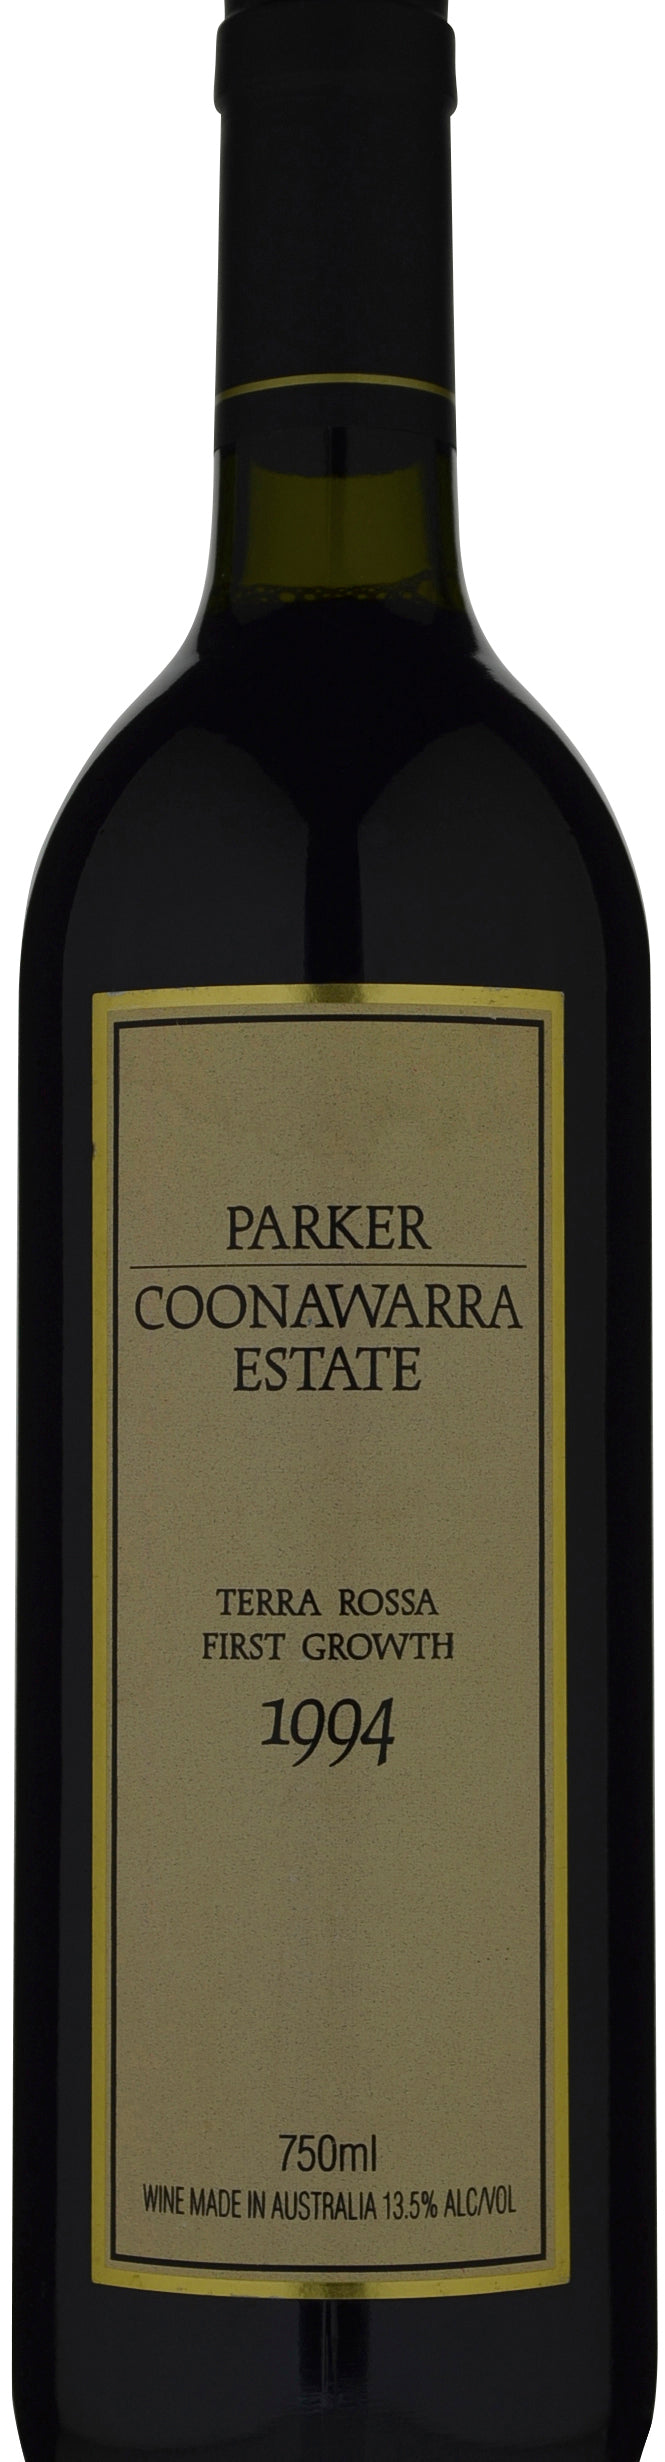 Parker Coonawarra Estate Terra Rossa 1st Growth Cabernet Sauvignon Cabernet Franc Merlot 1994